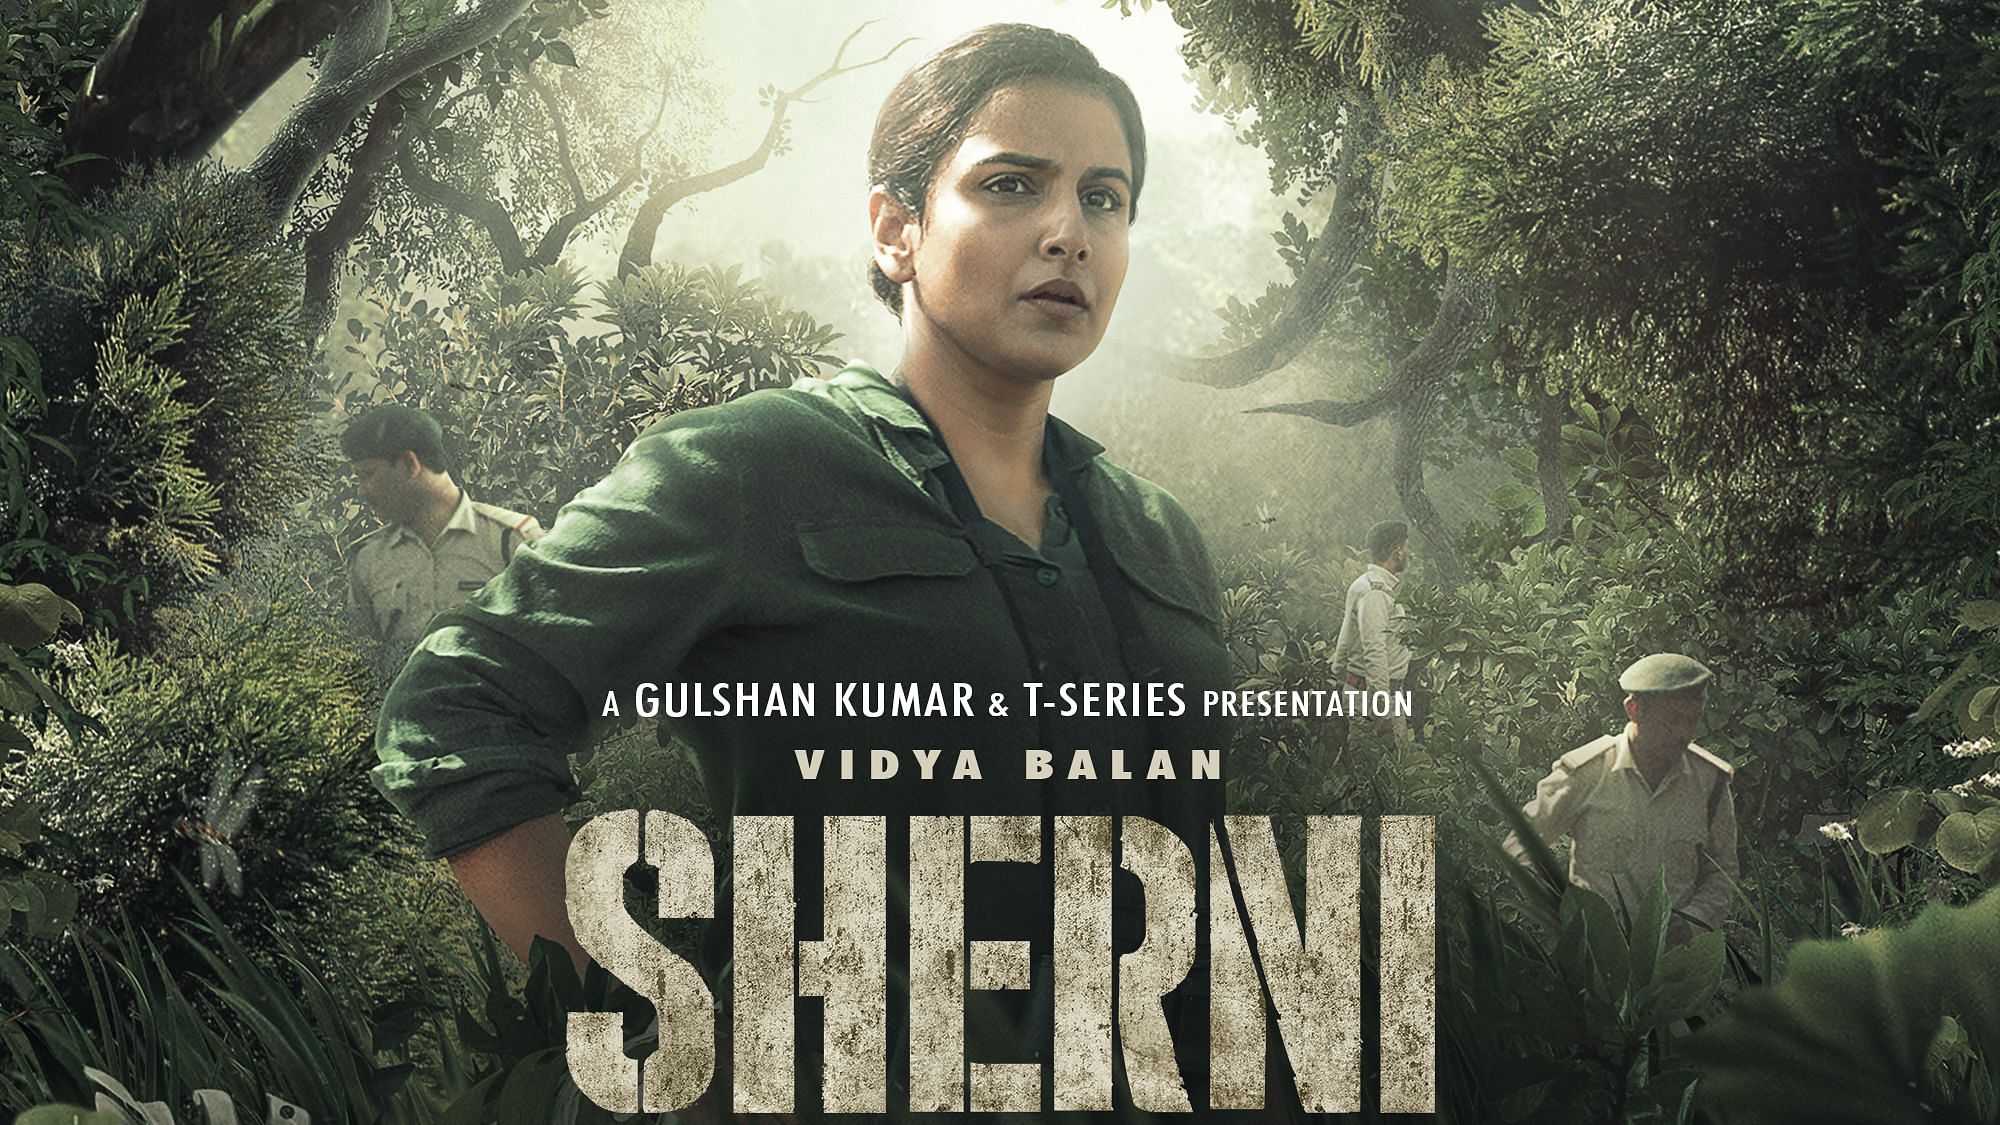 <div class="paragraphs"><p>Actor Vidya Balan plays forest officer Vidya Vincent in 'Sherni'</p></div>